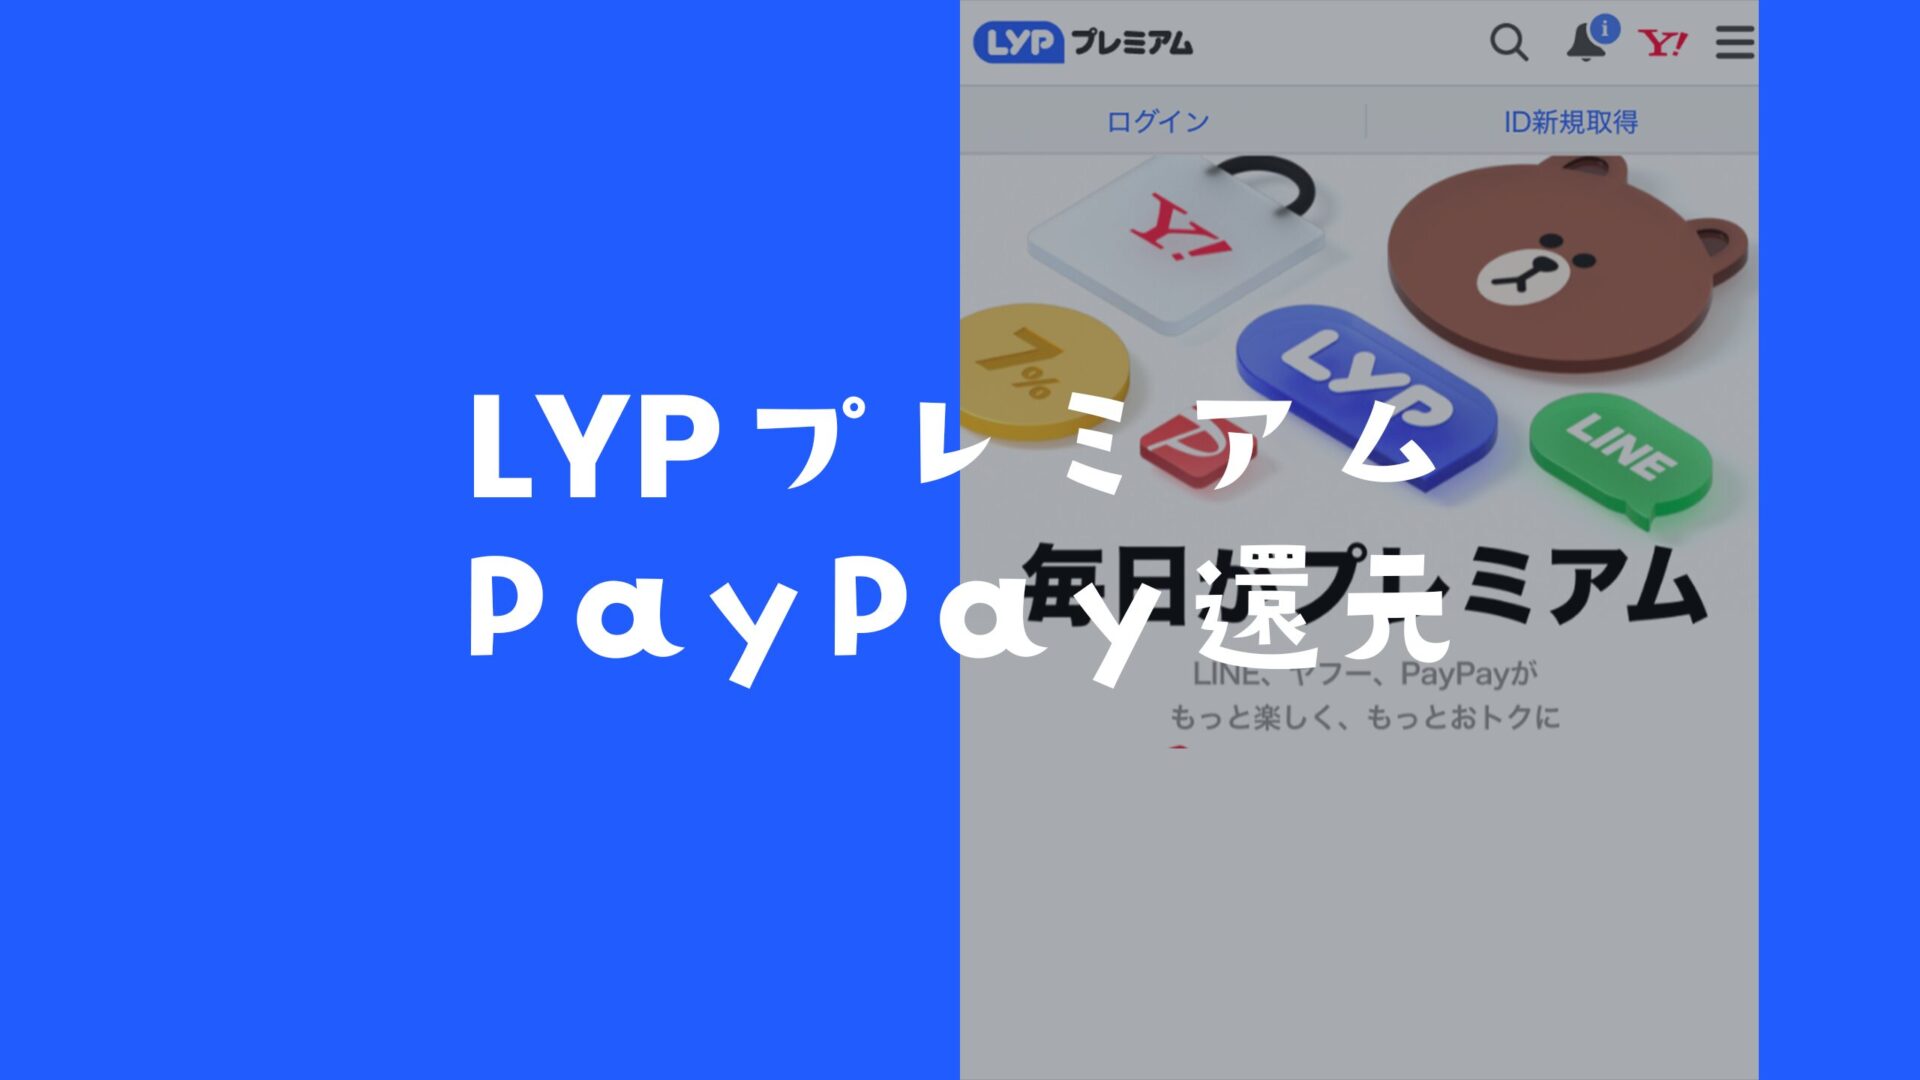 LYPプレミアムで4000円相当のポイントがPayPay還元。のサムネイル画像